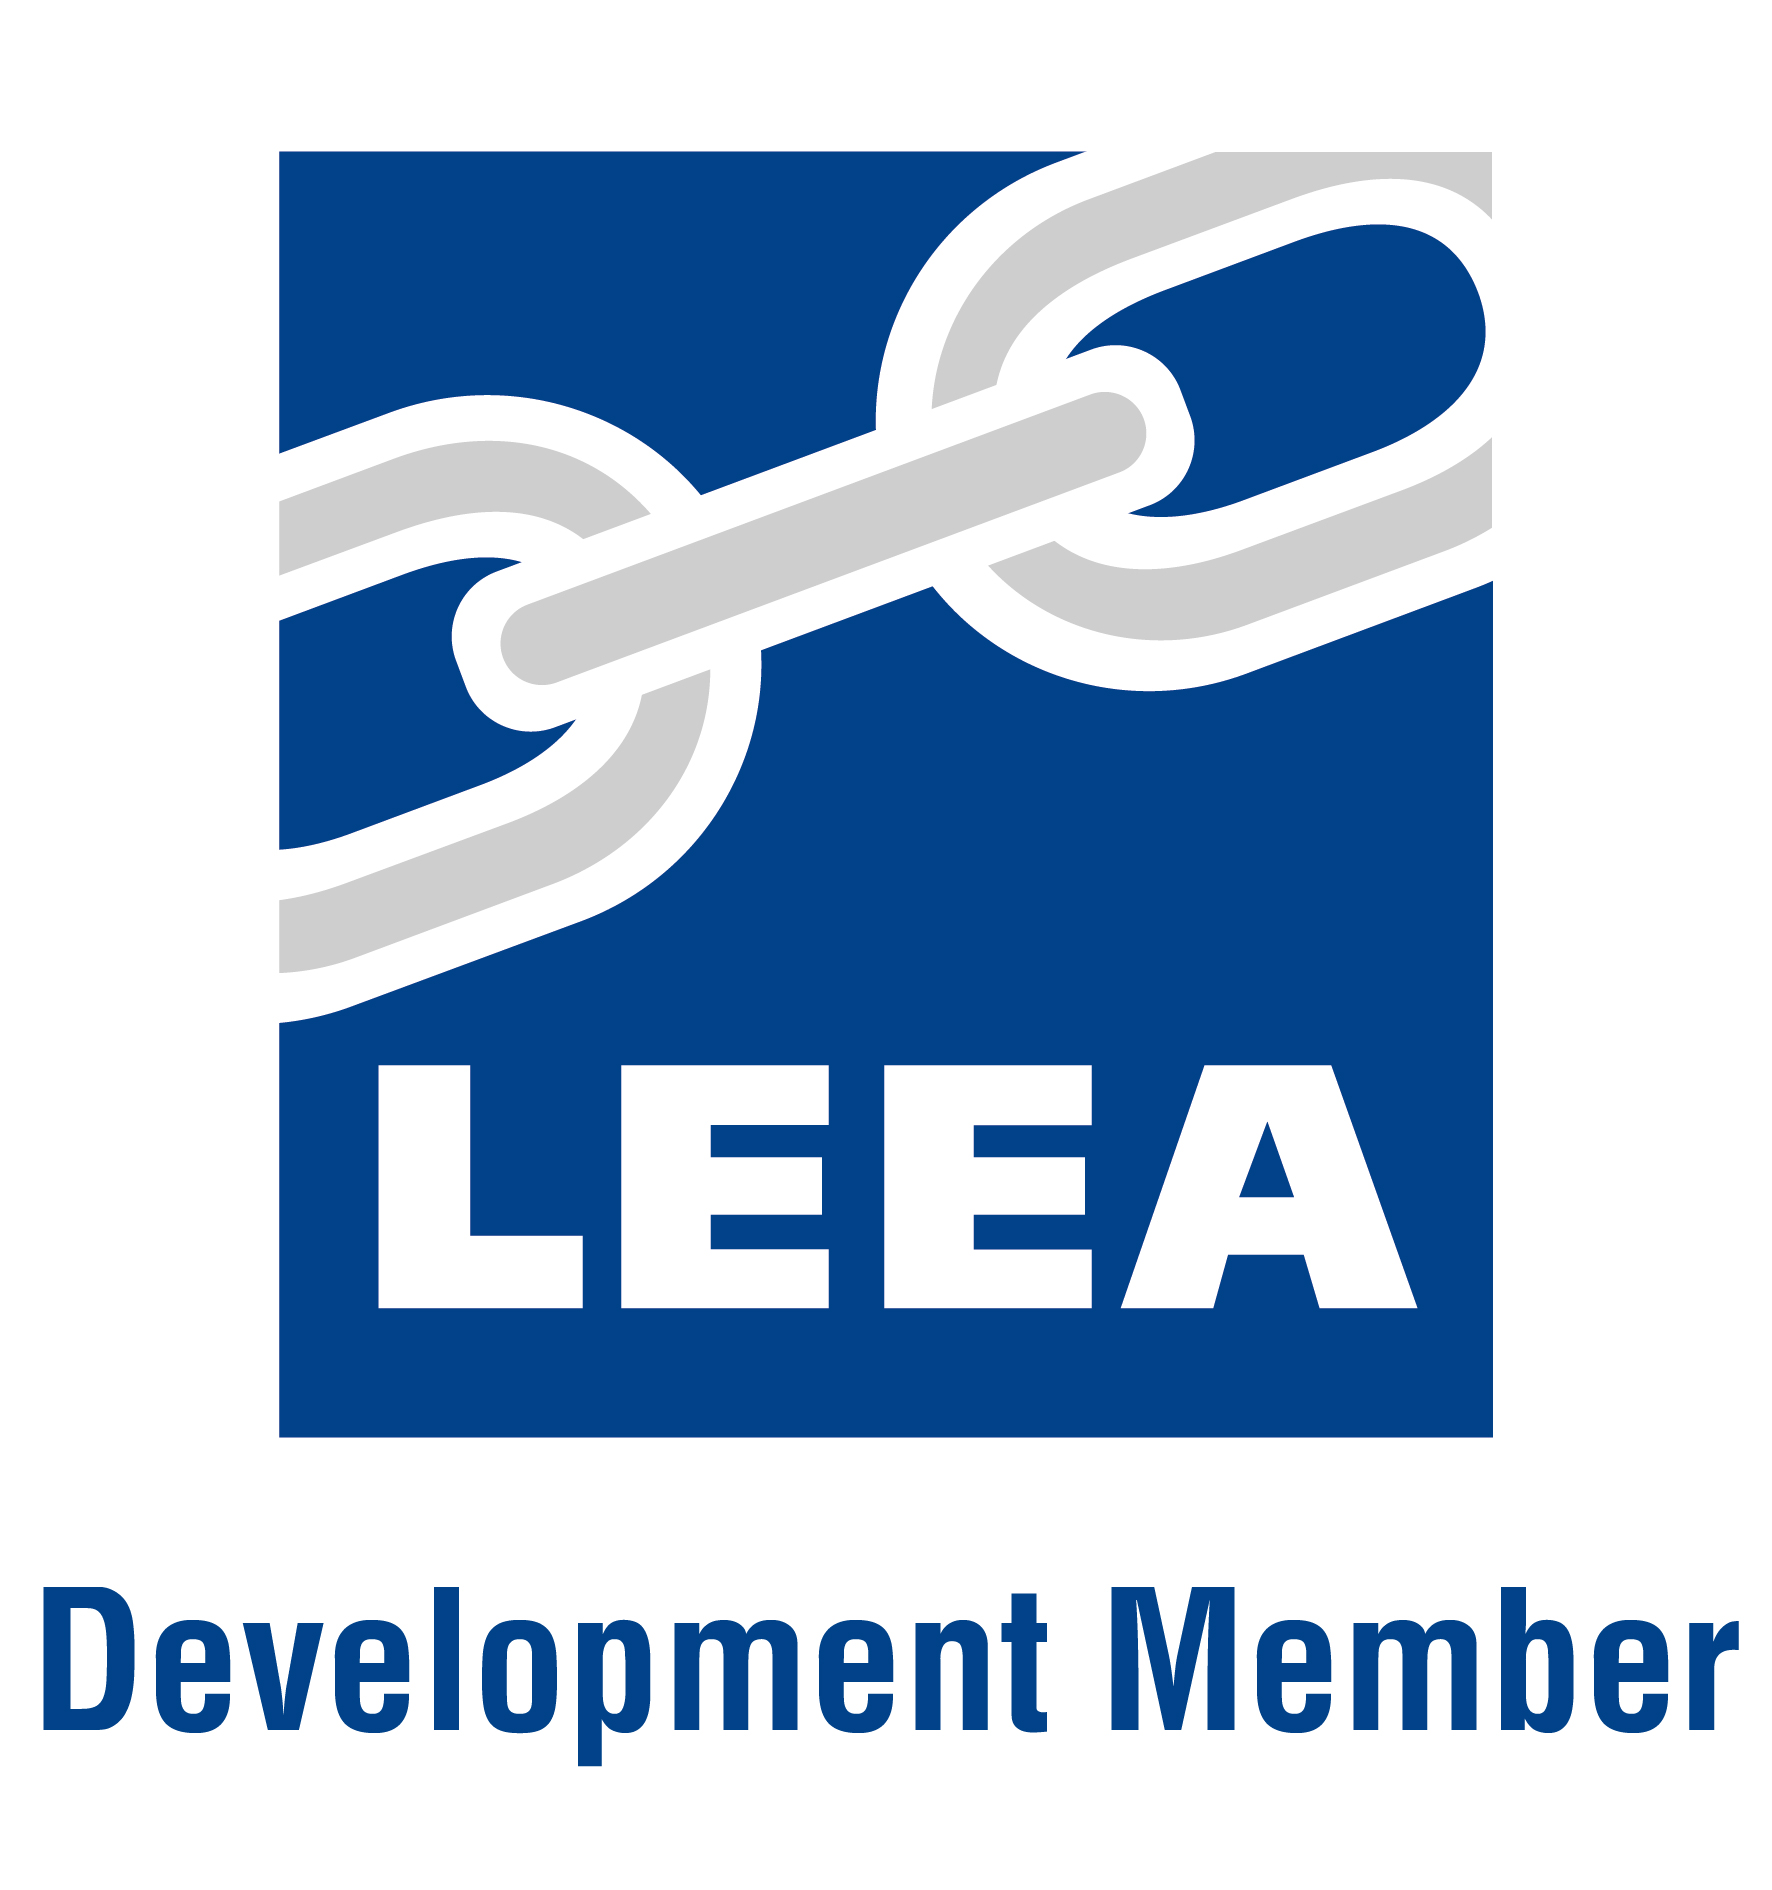 LEEA Members